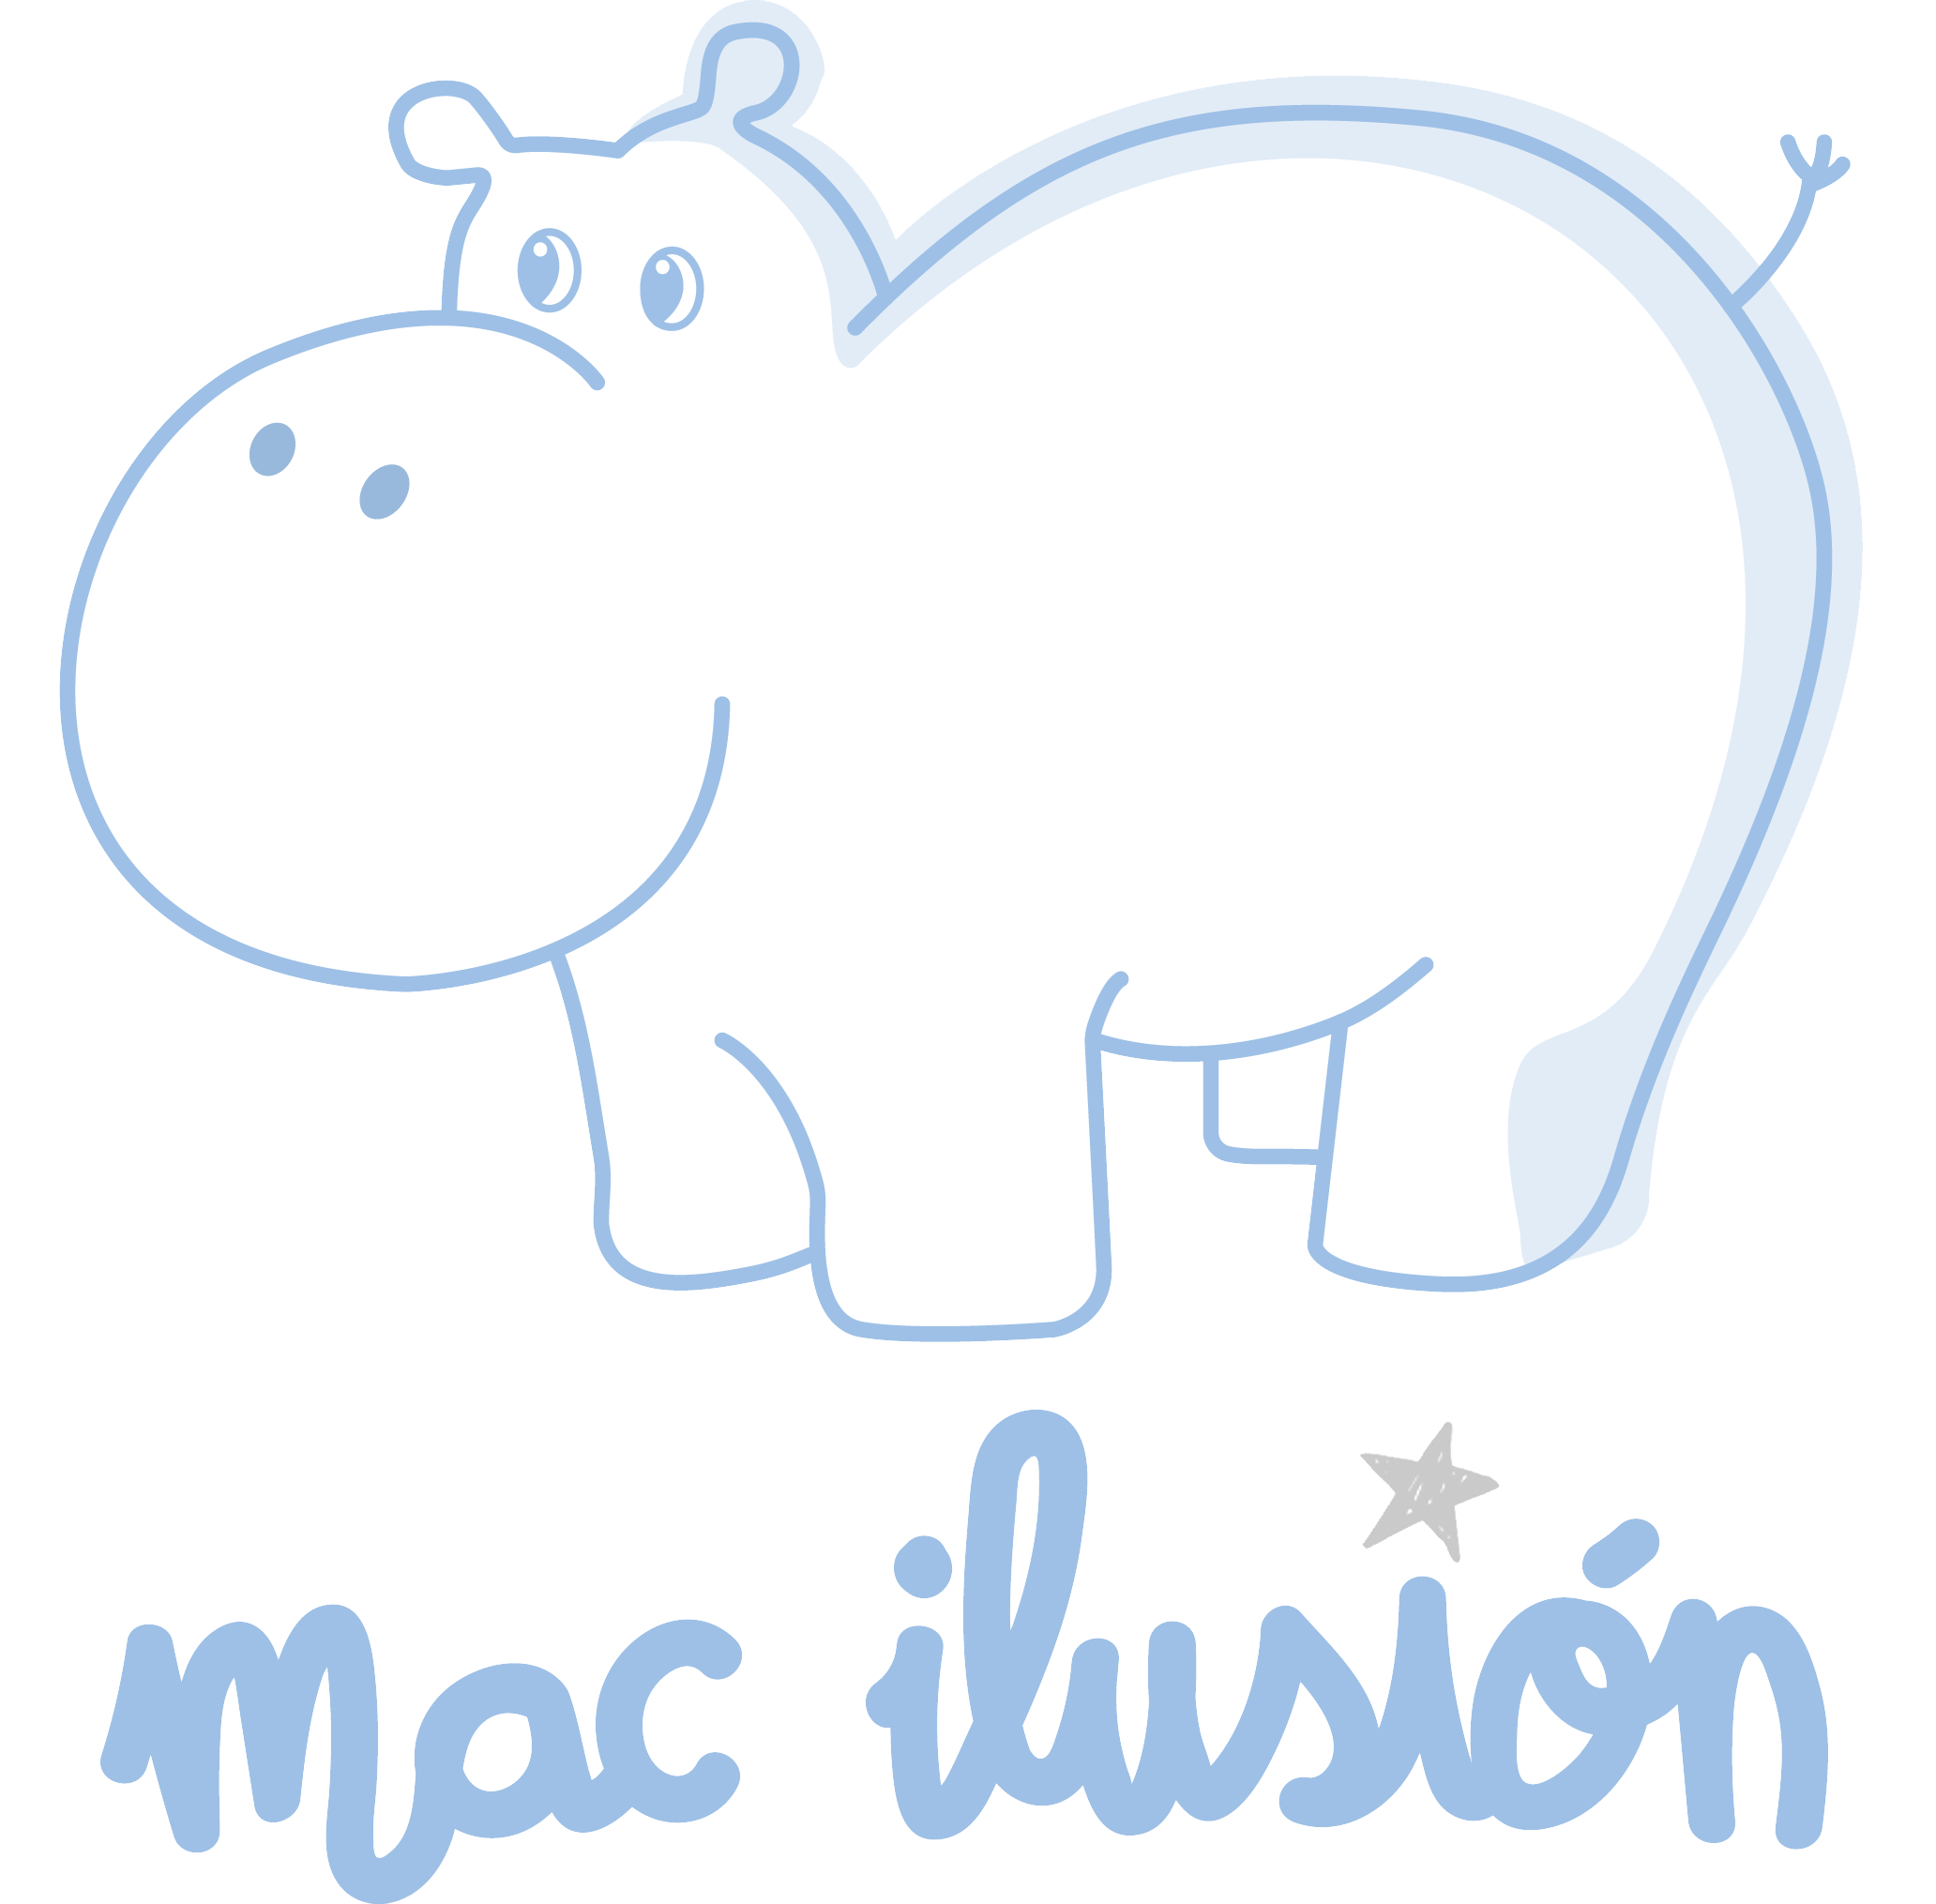 Mac ilusión